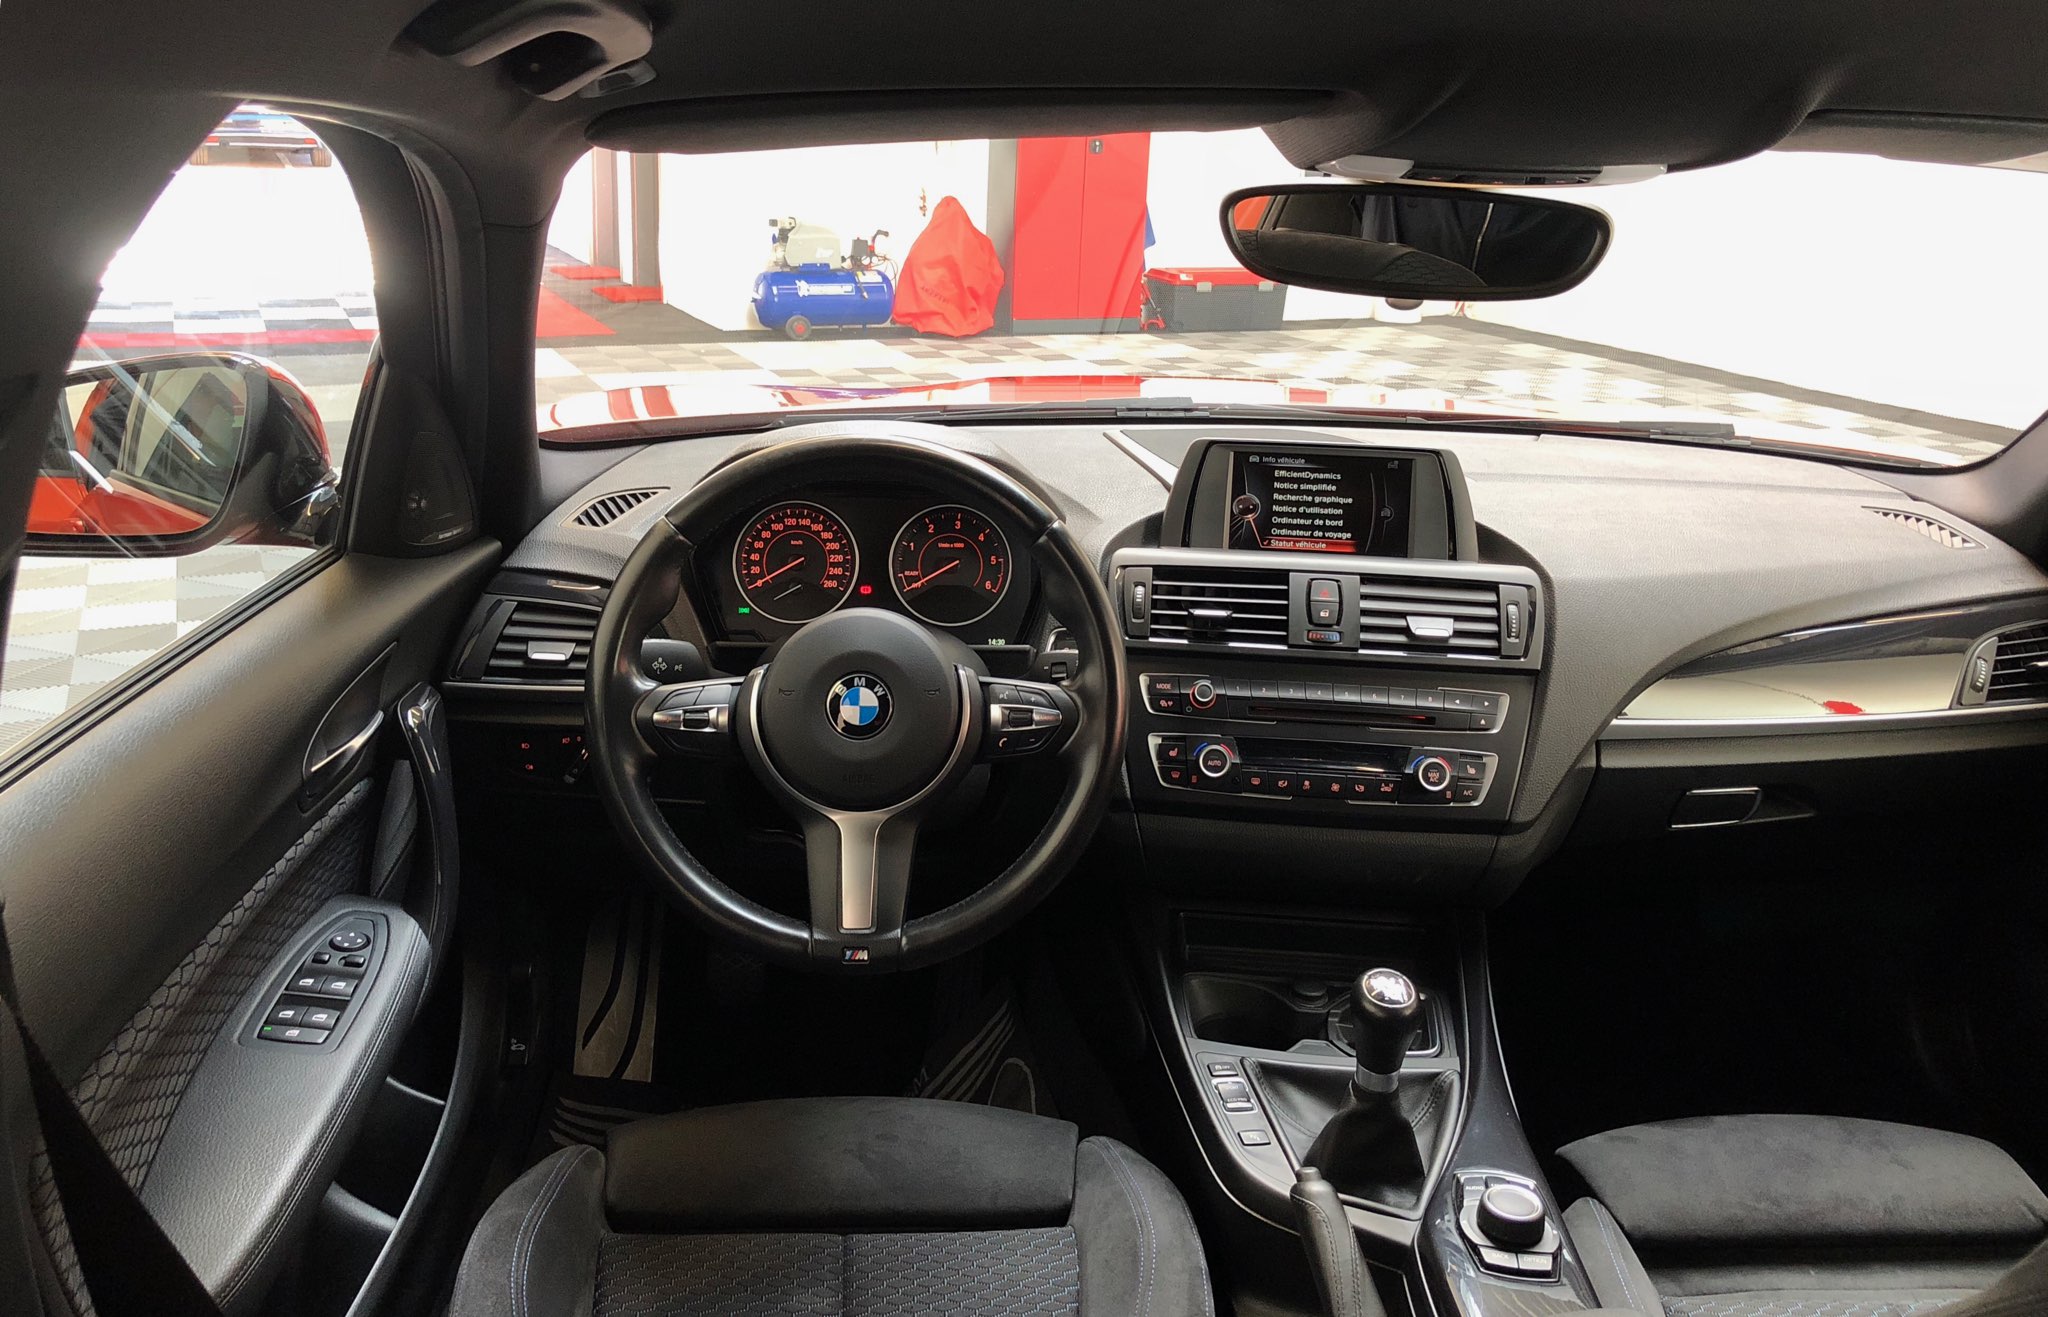 BMW 116D M-SPORT 119 990 km 03 2015 CUIVRE